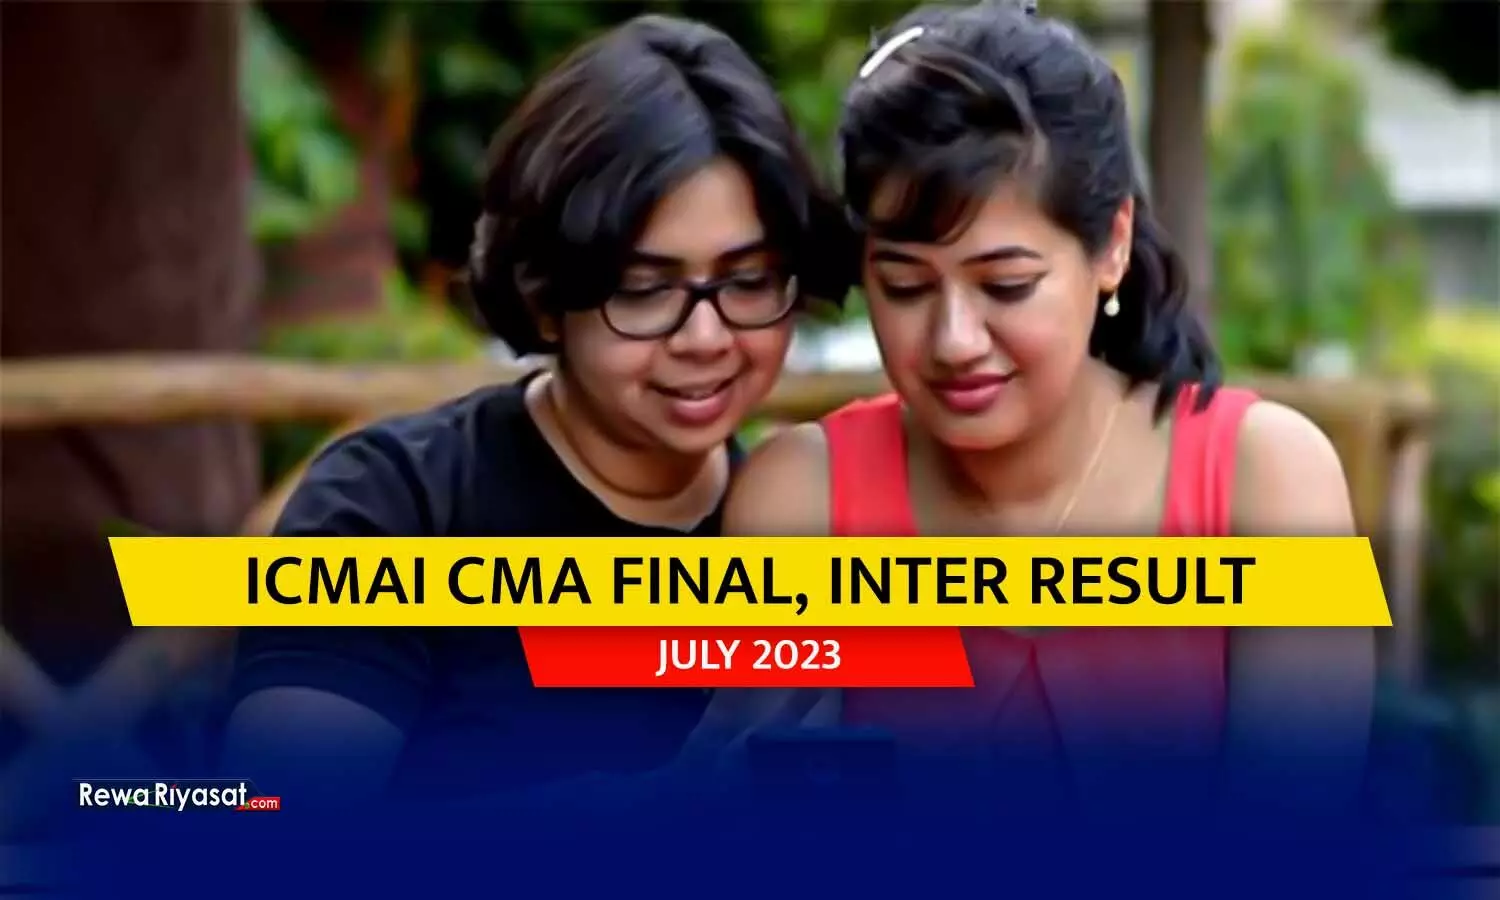 ICMAI CMA Result 2023 Released: जुलाई सत्र के लिए फाइनल, इंटर परिणाम icmai.in पर, डायरेक्ट लिंक